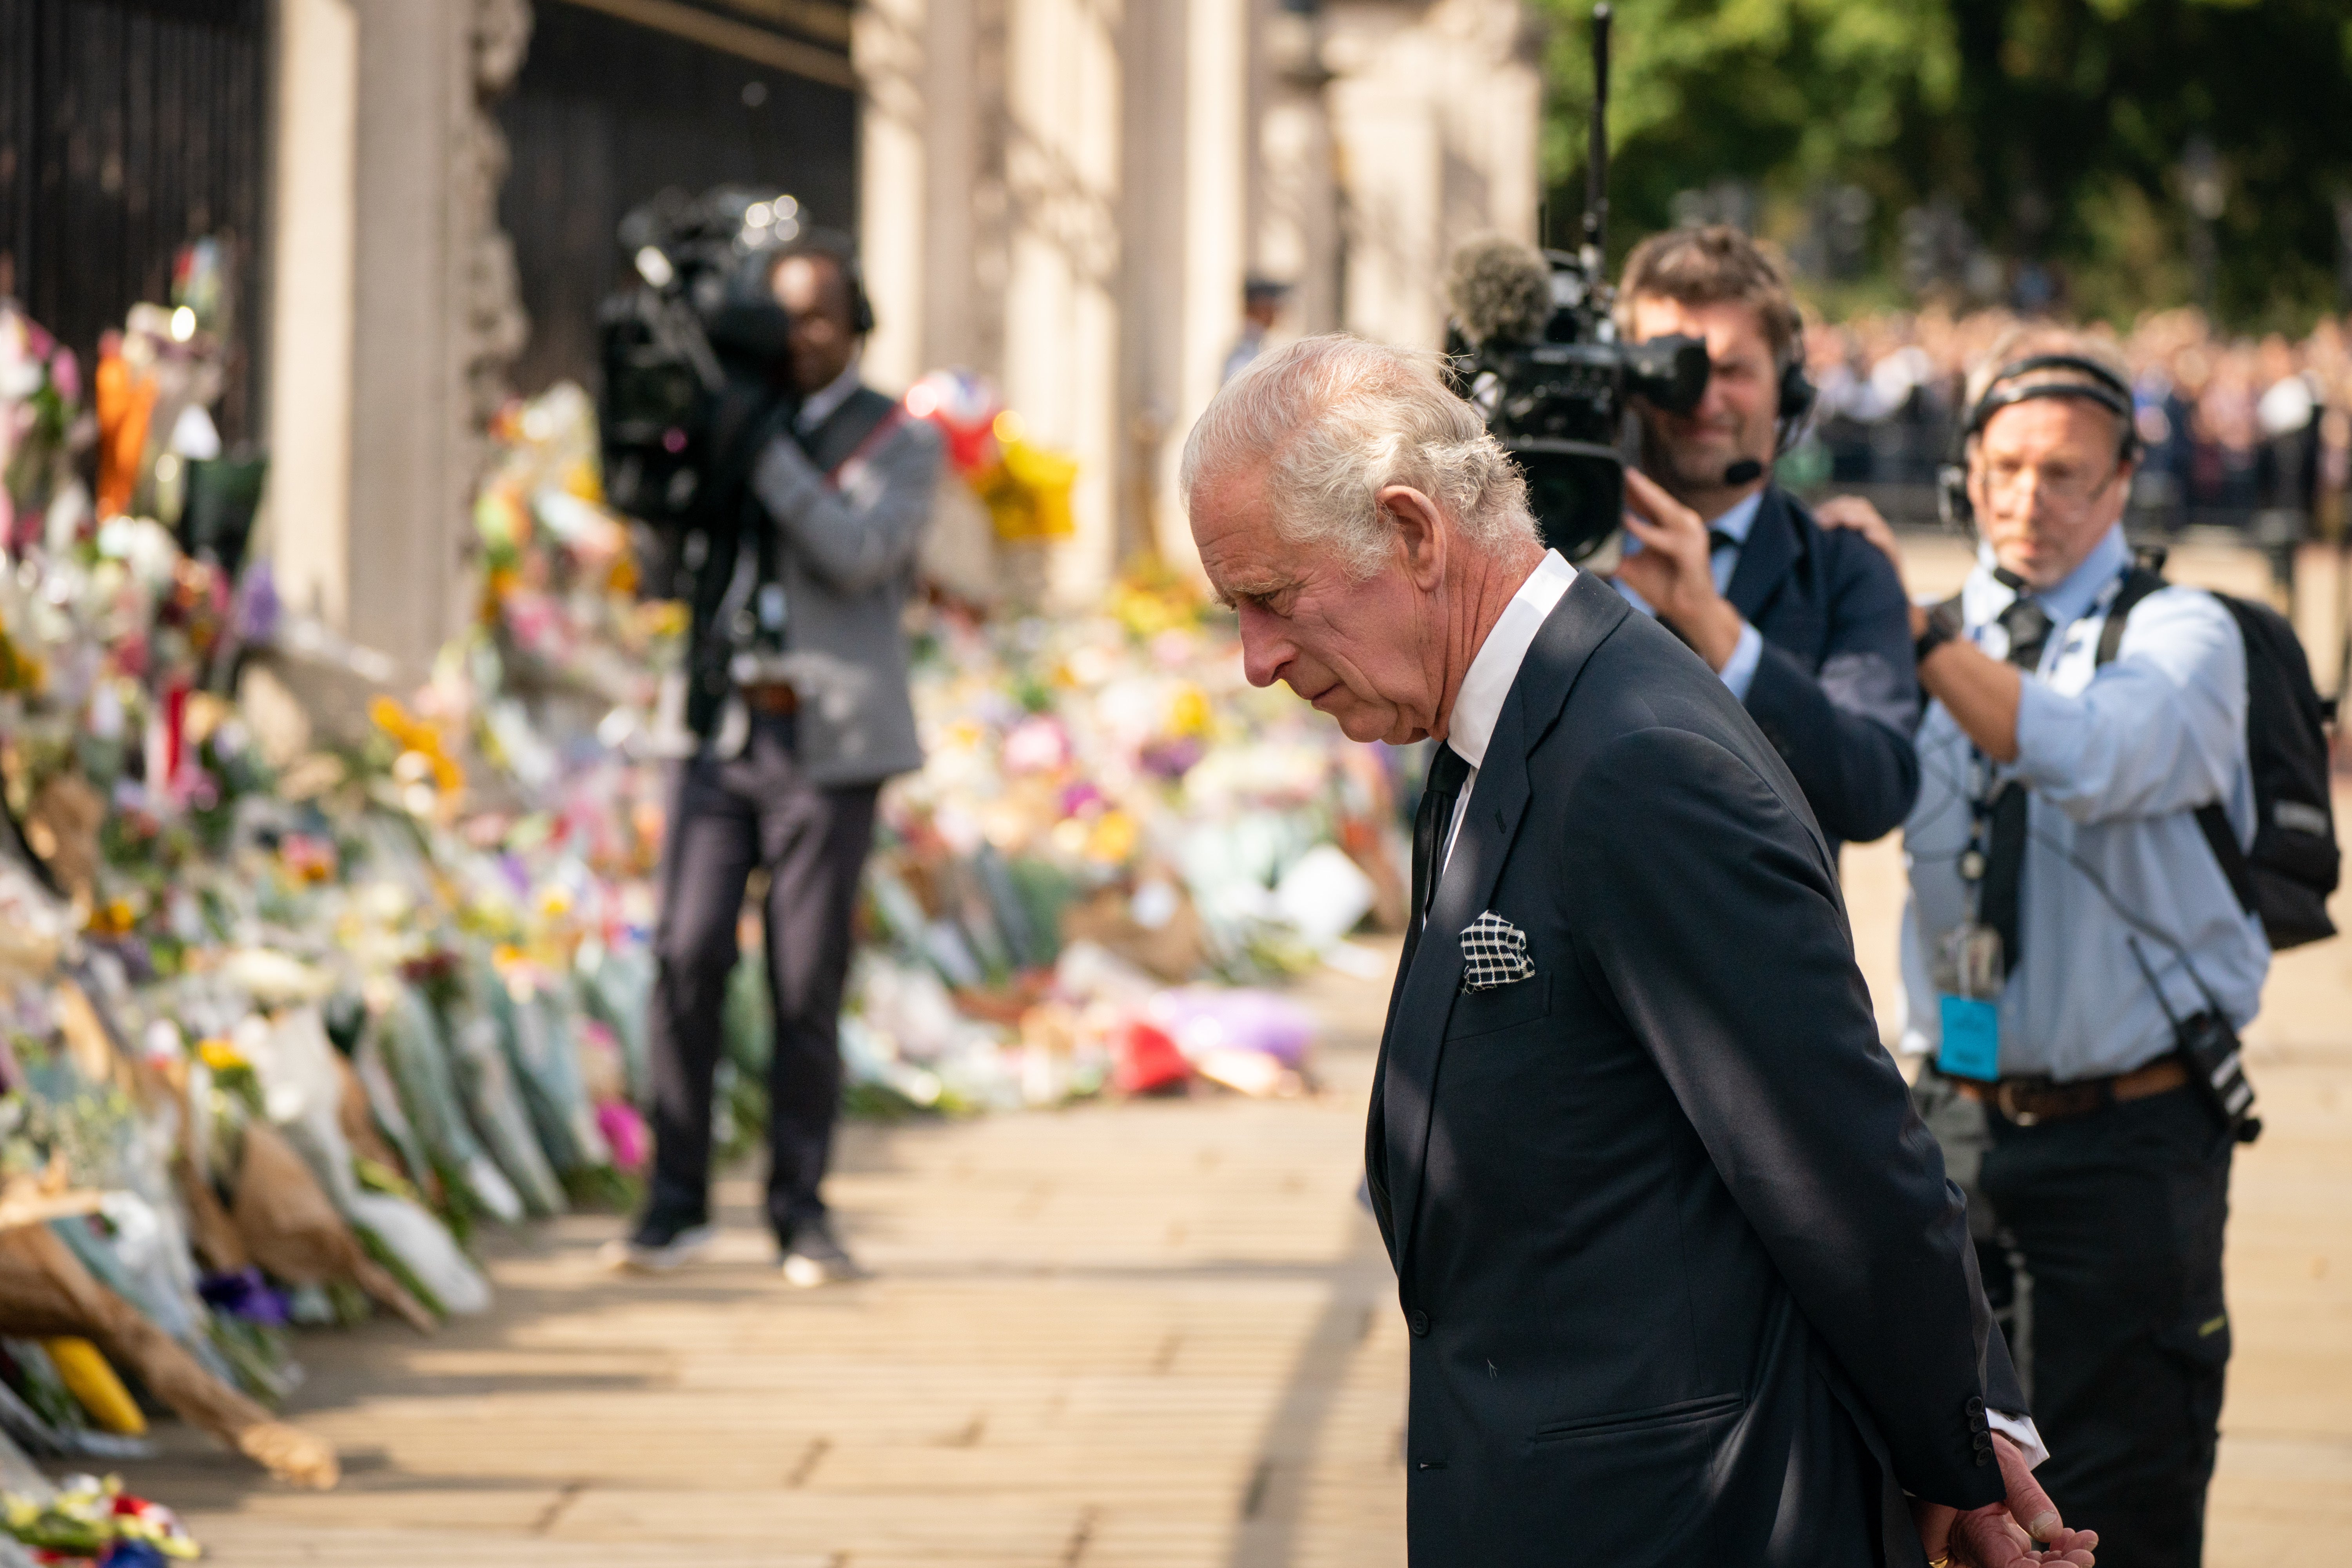 El rey observa las ofrendas florales fuera del Palacio de Buckingham el viernes (Dominic Lipinski/PA)